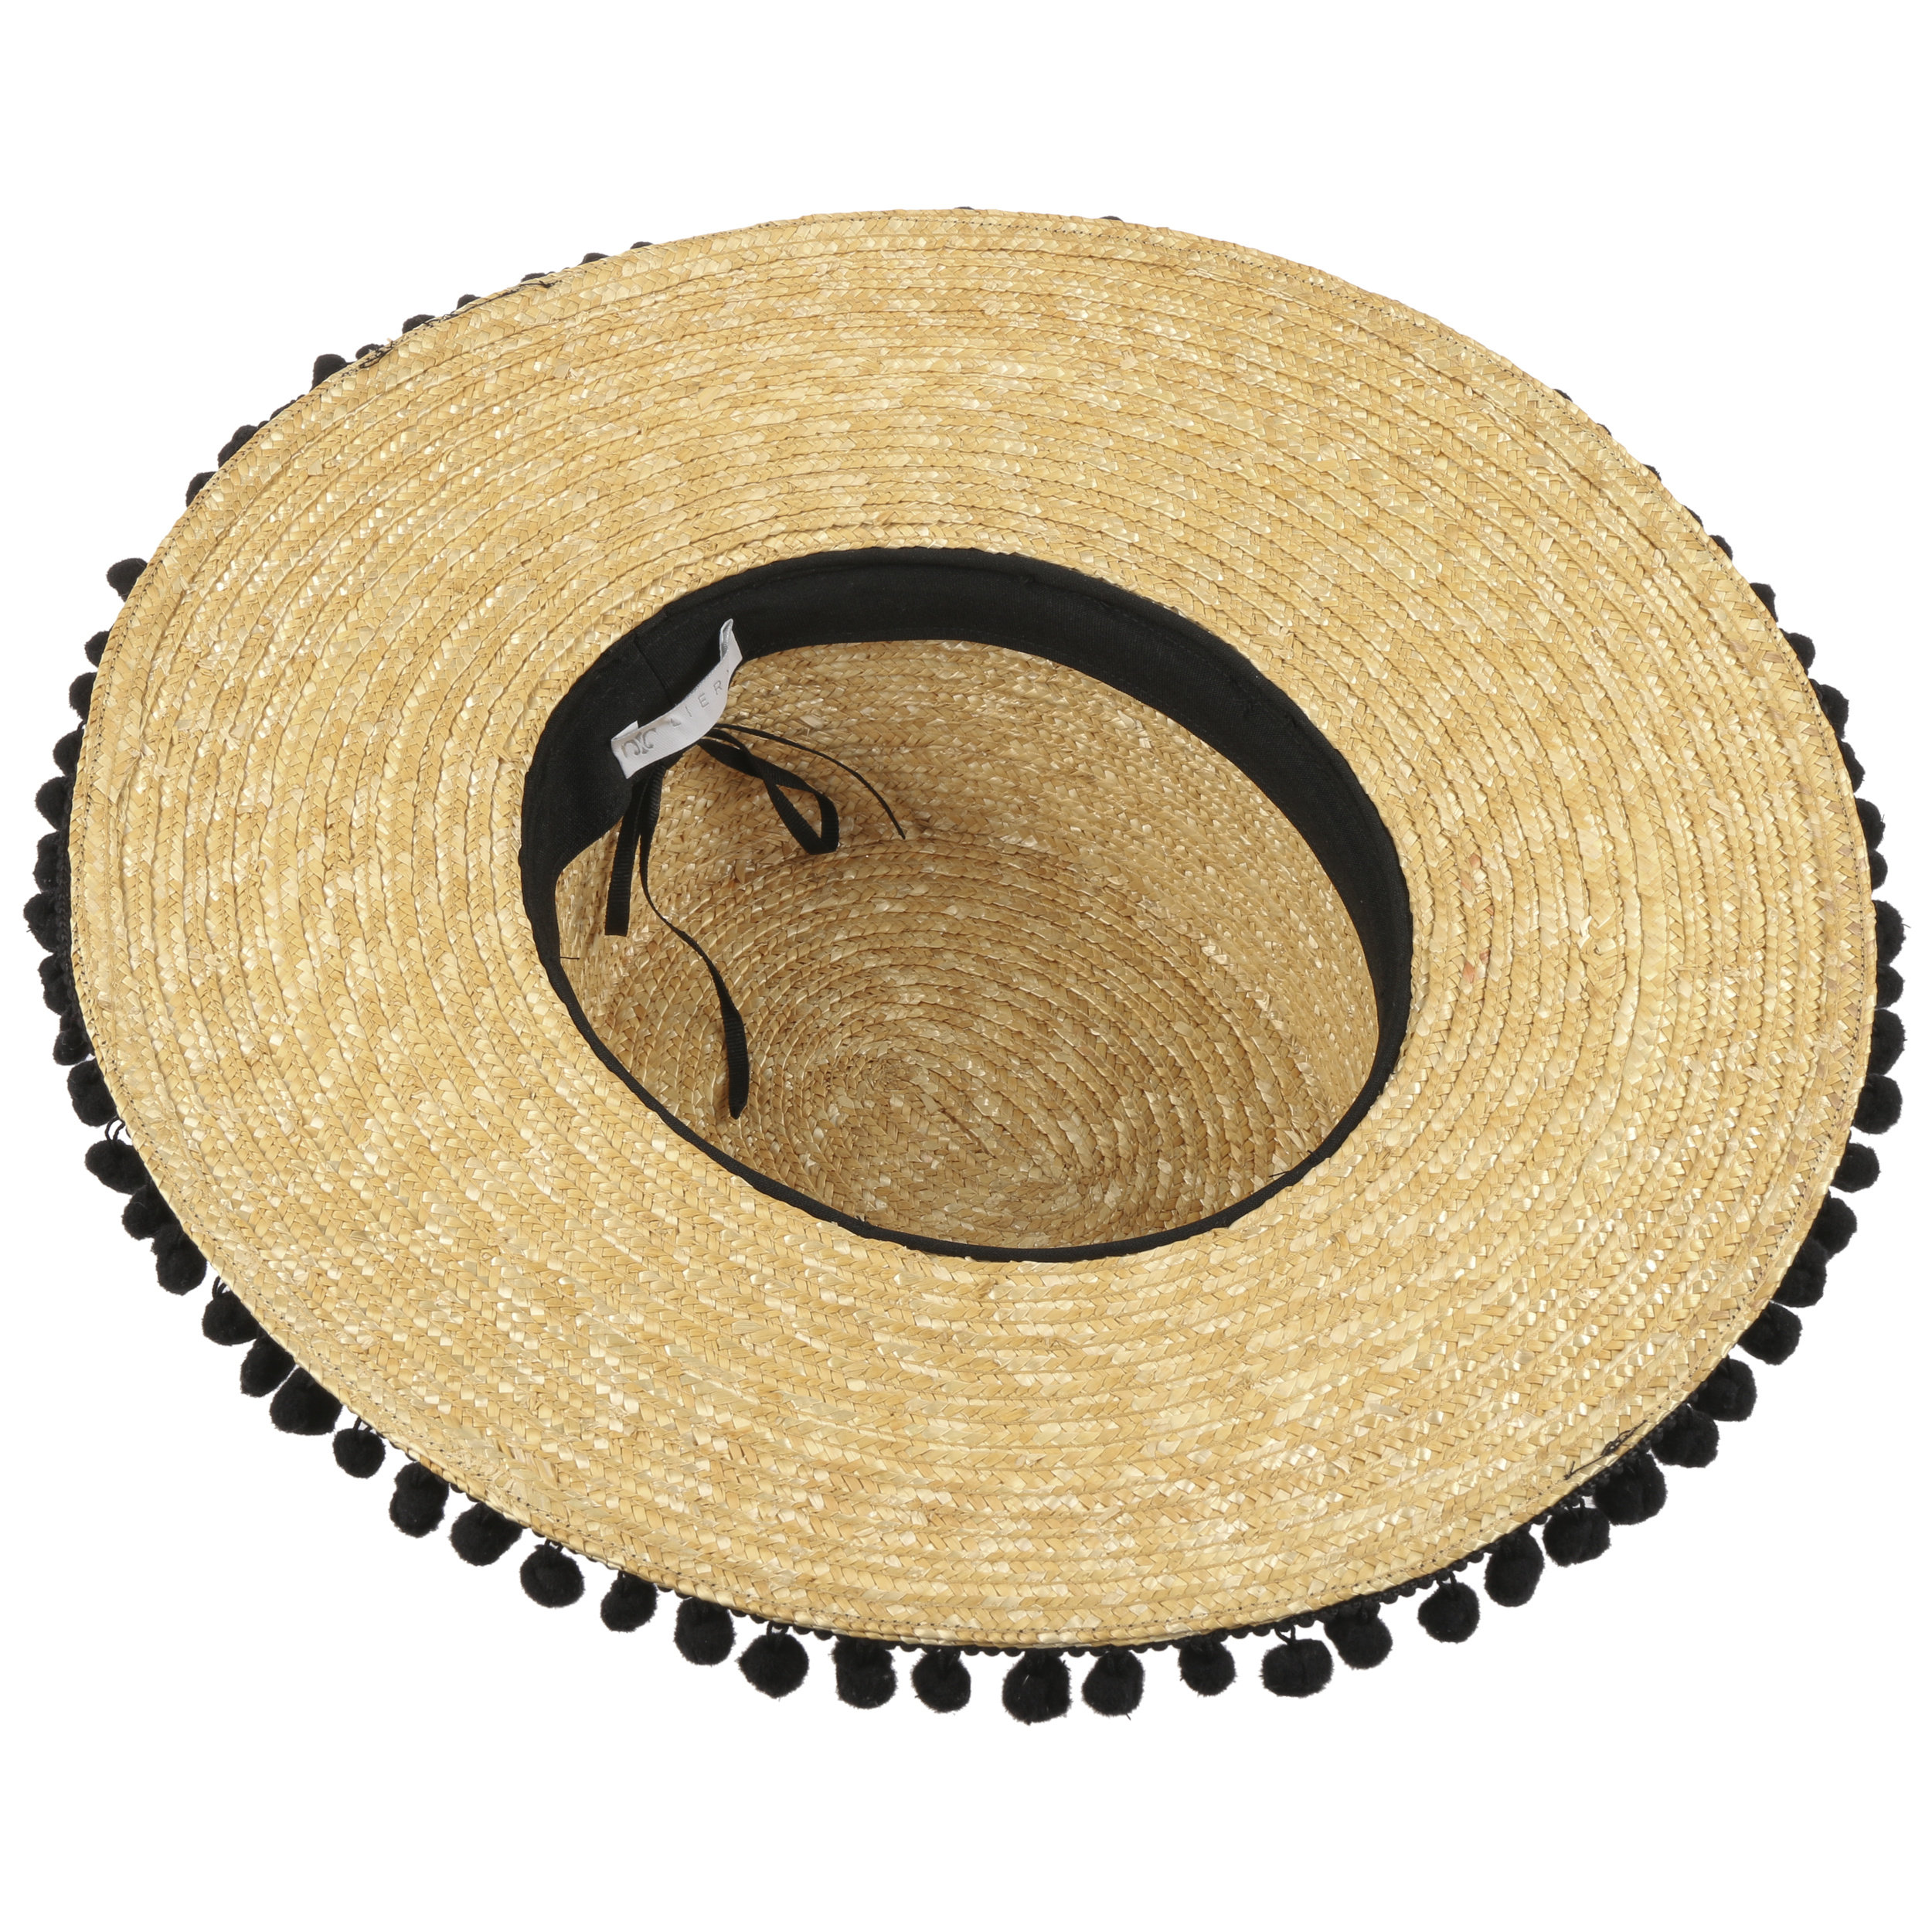 Made in Italy Verano Sol con Banda Grosgrain Primavera/Verano Lierys Sombrero de Paja Trigo Valencia Mujer 